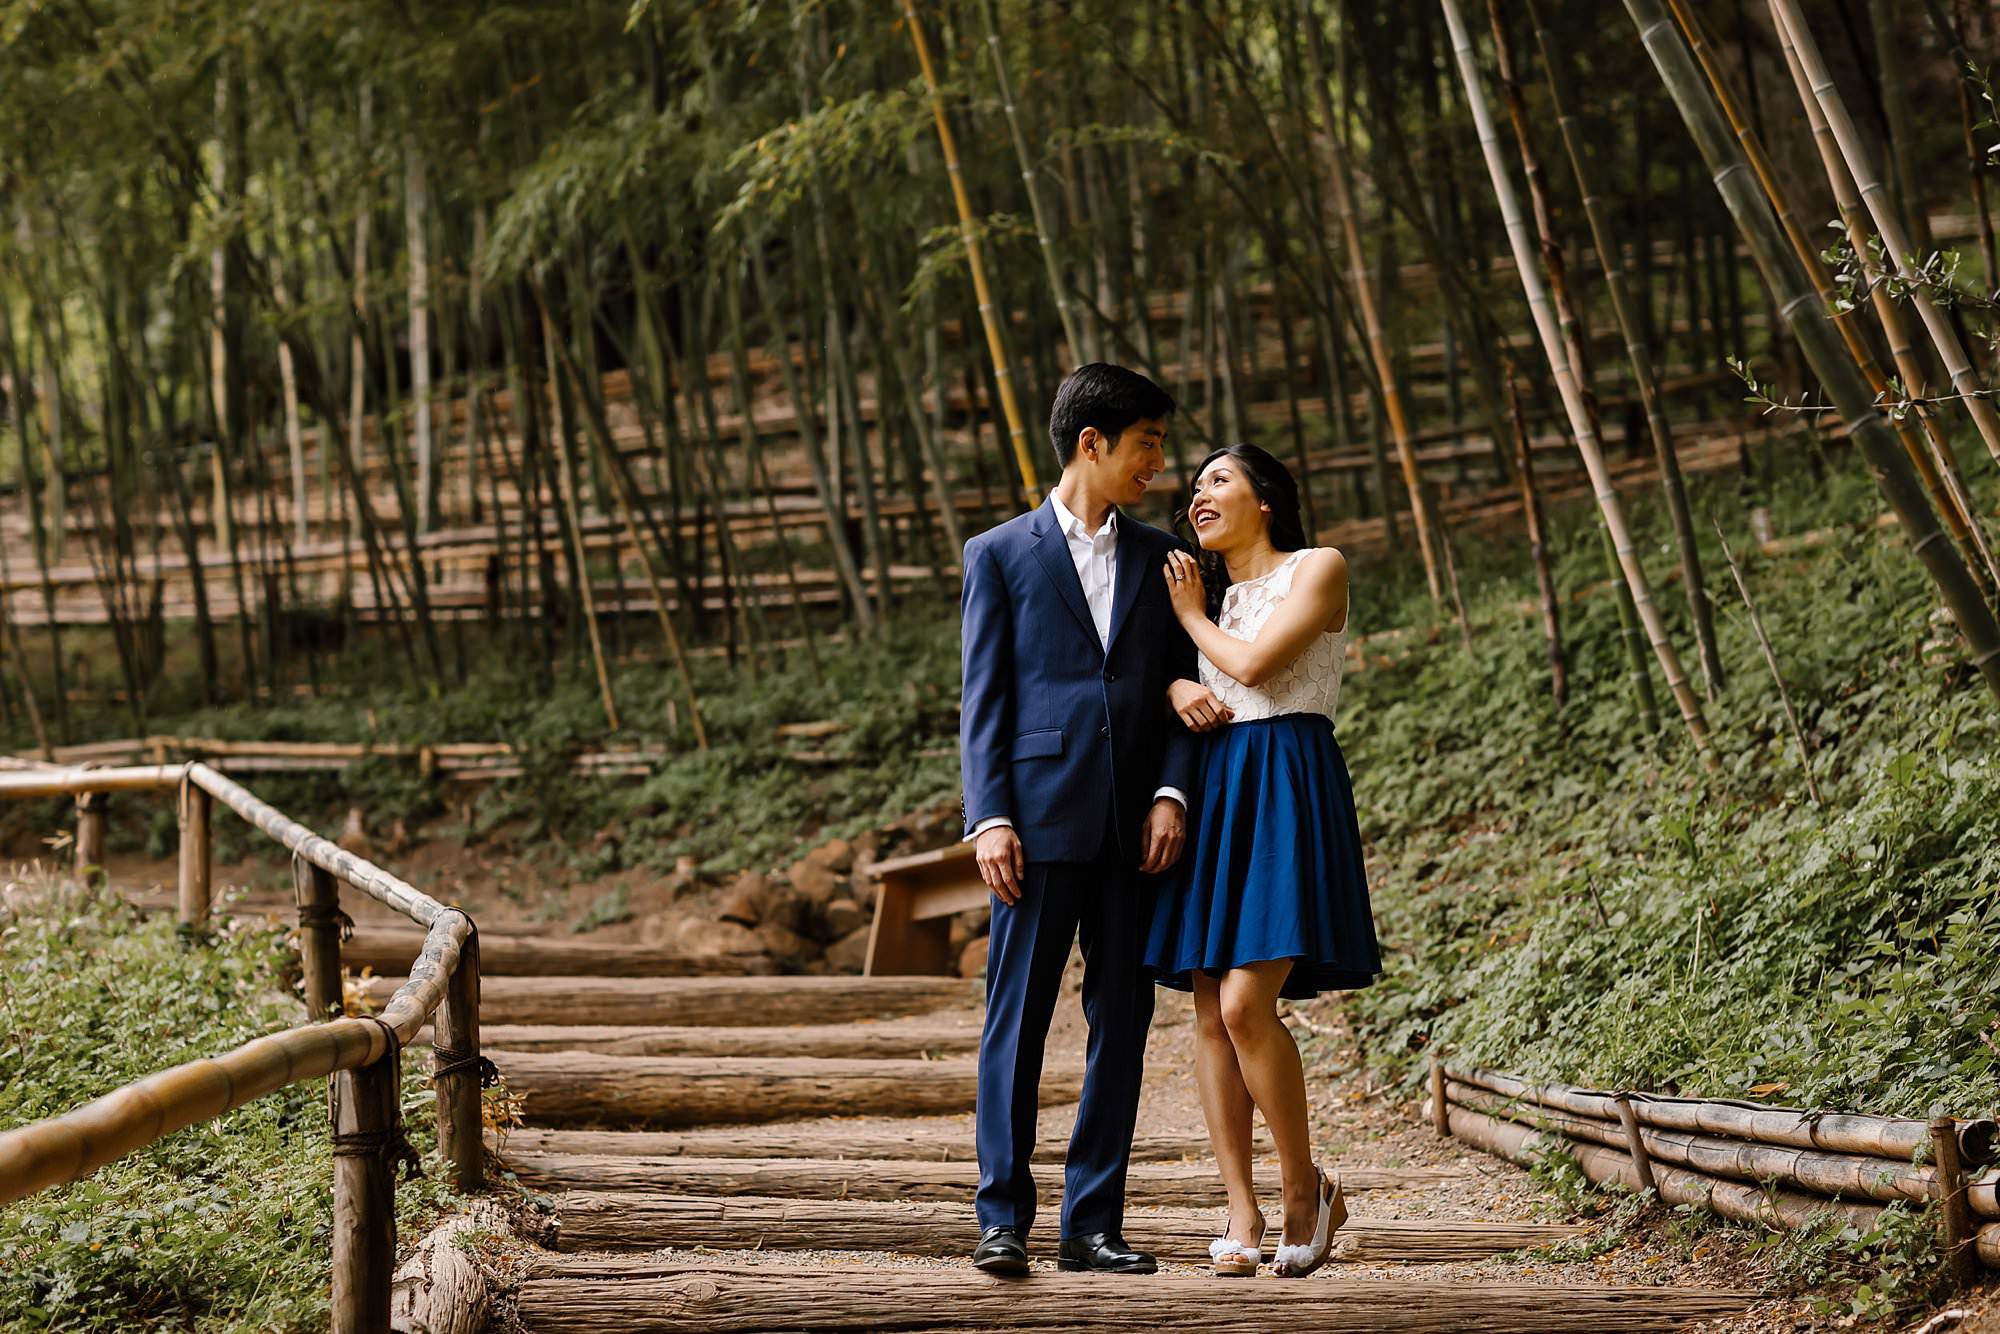 Engaged couple walking through the bamboo path at Hakone Estate